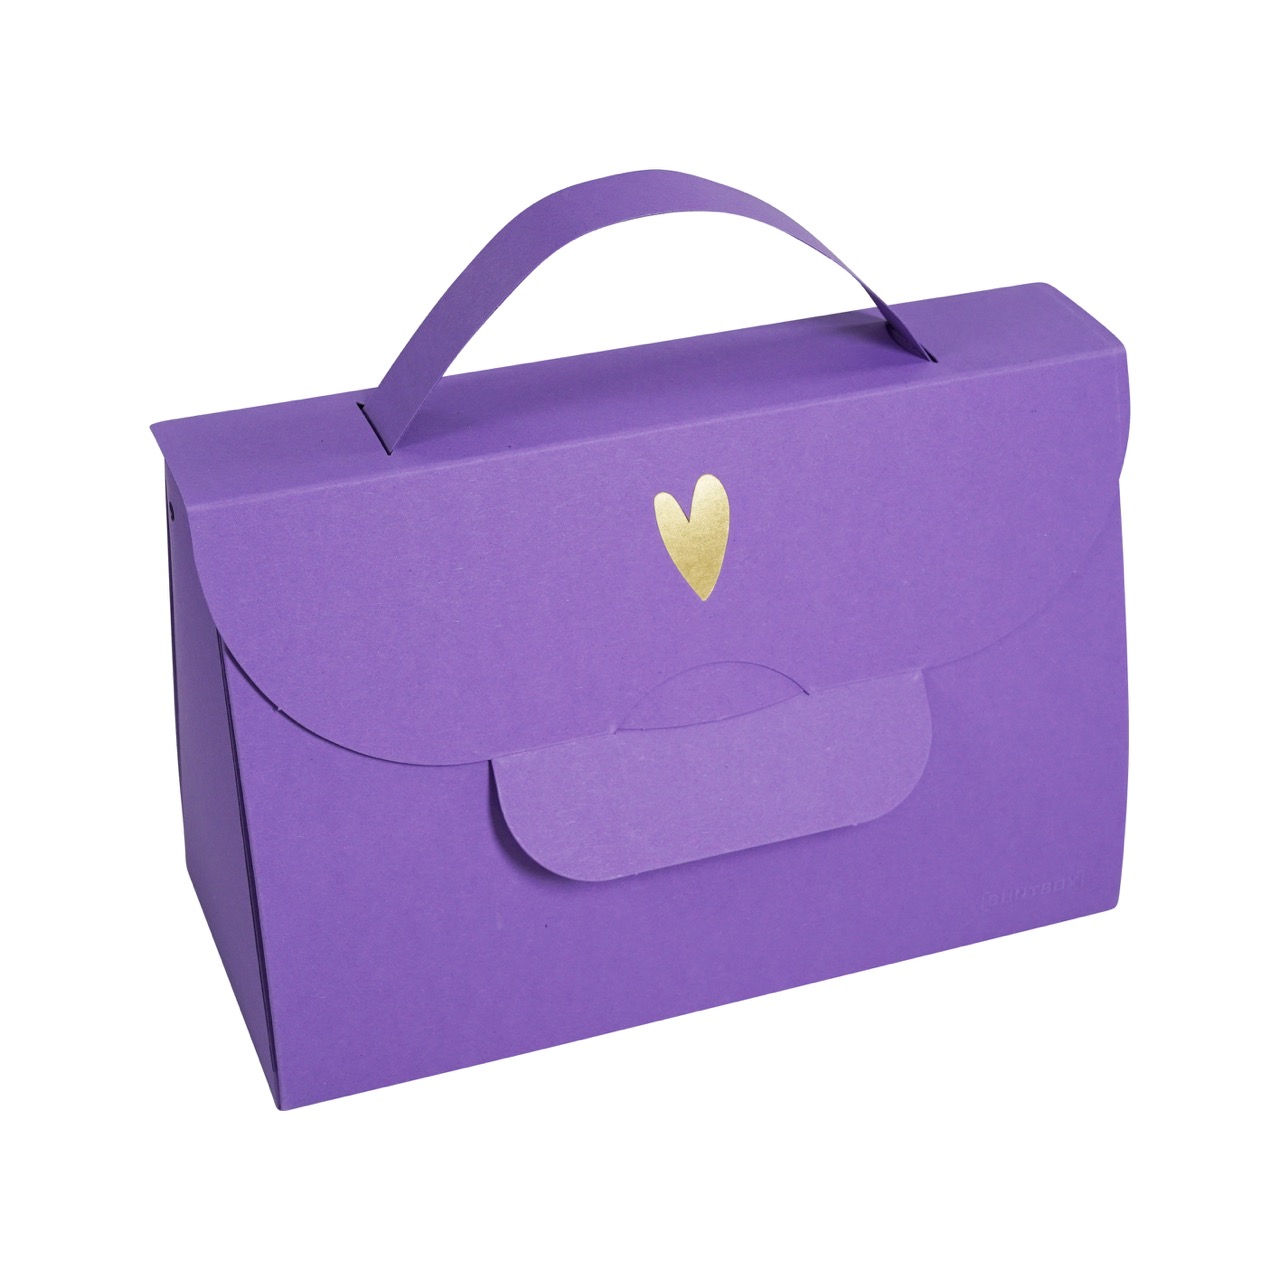 Buntbox Handbag Goldenes Herz